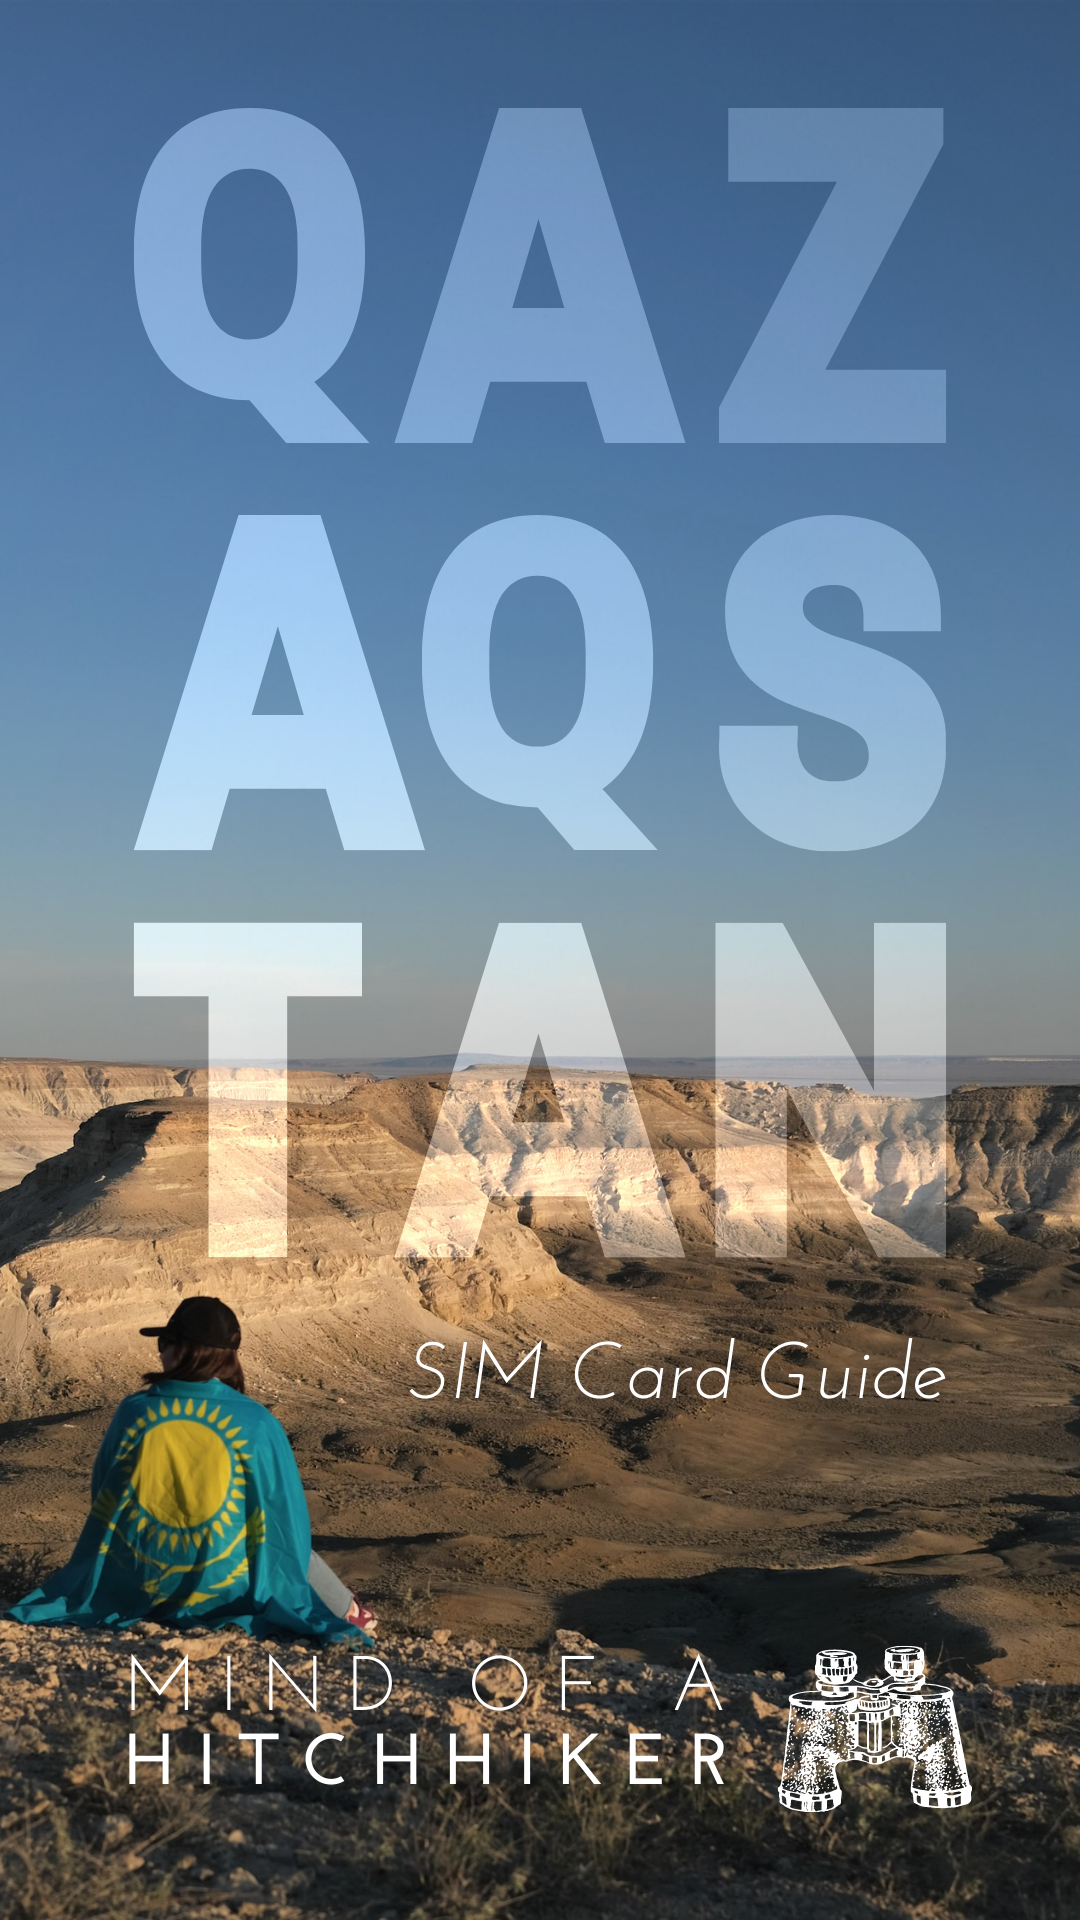 sim card in Qazaqstan